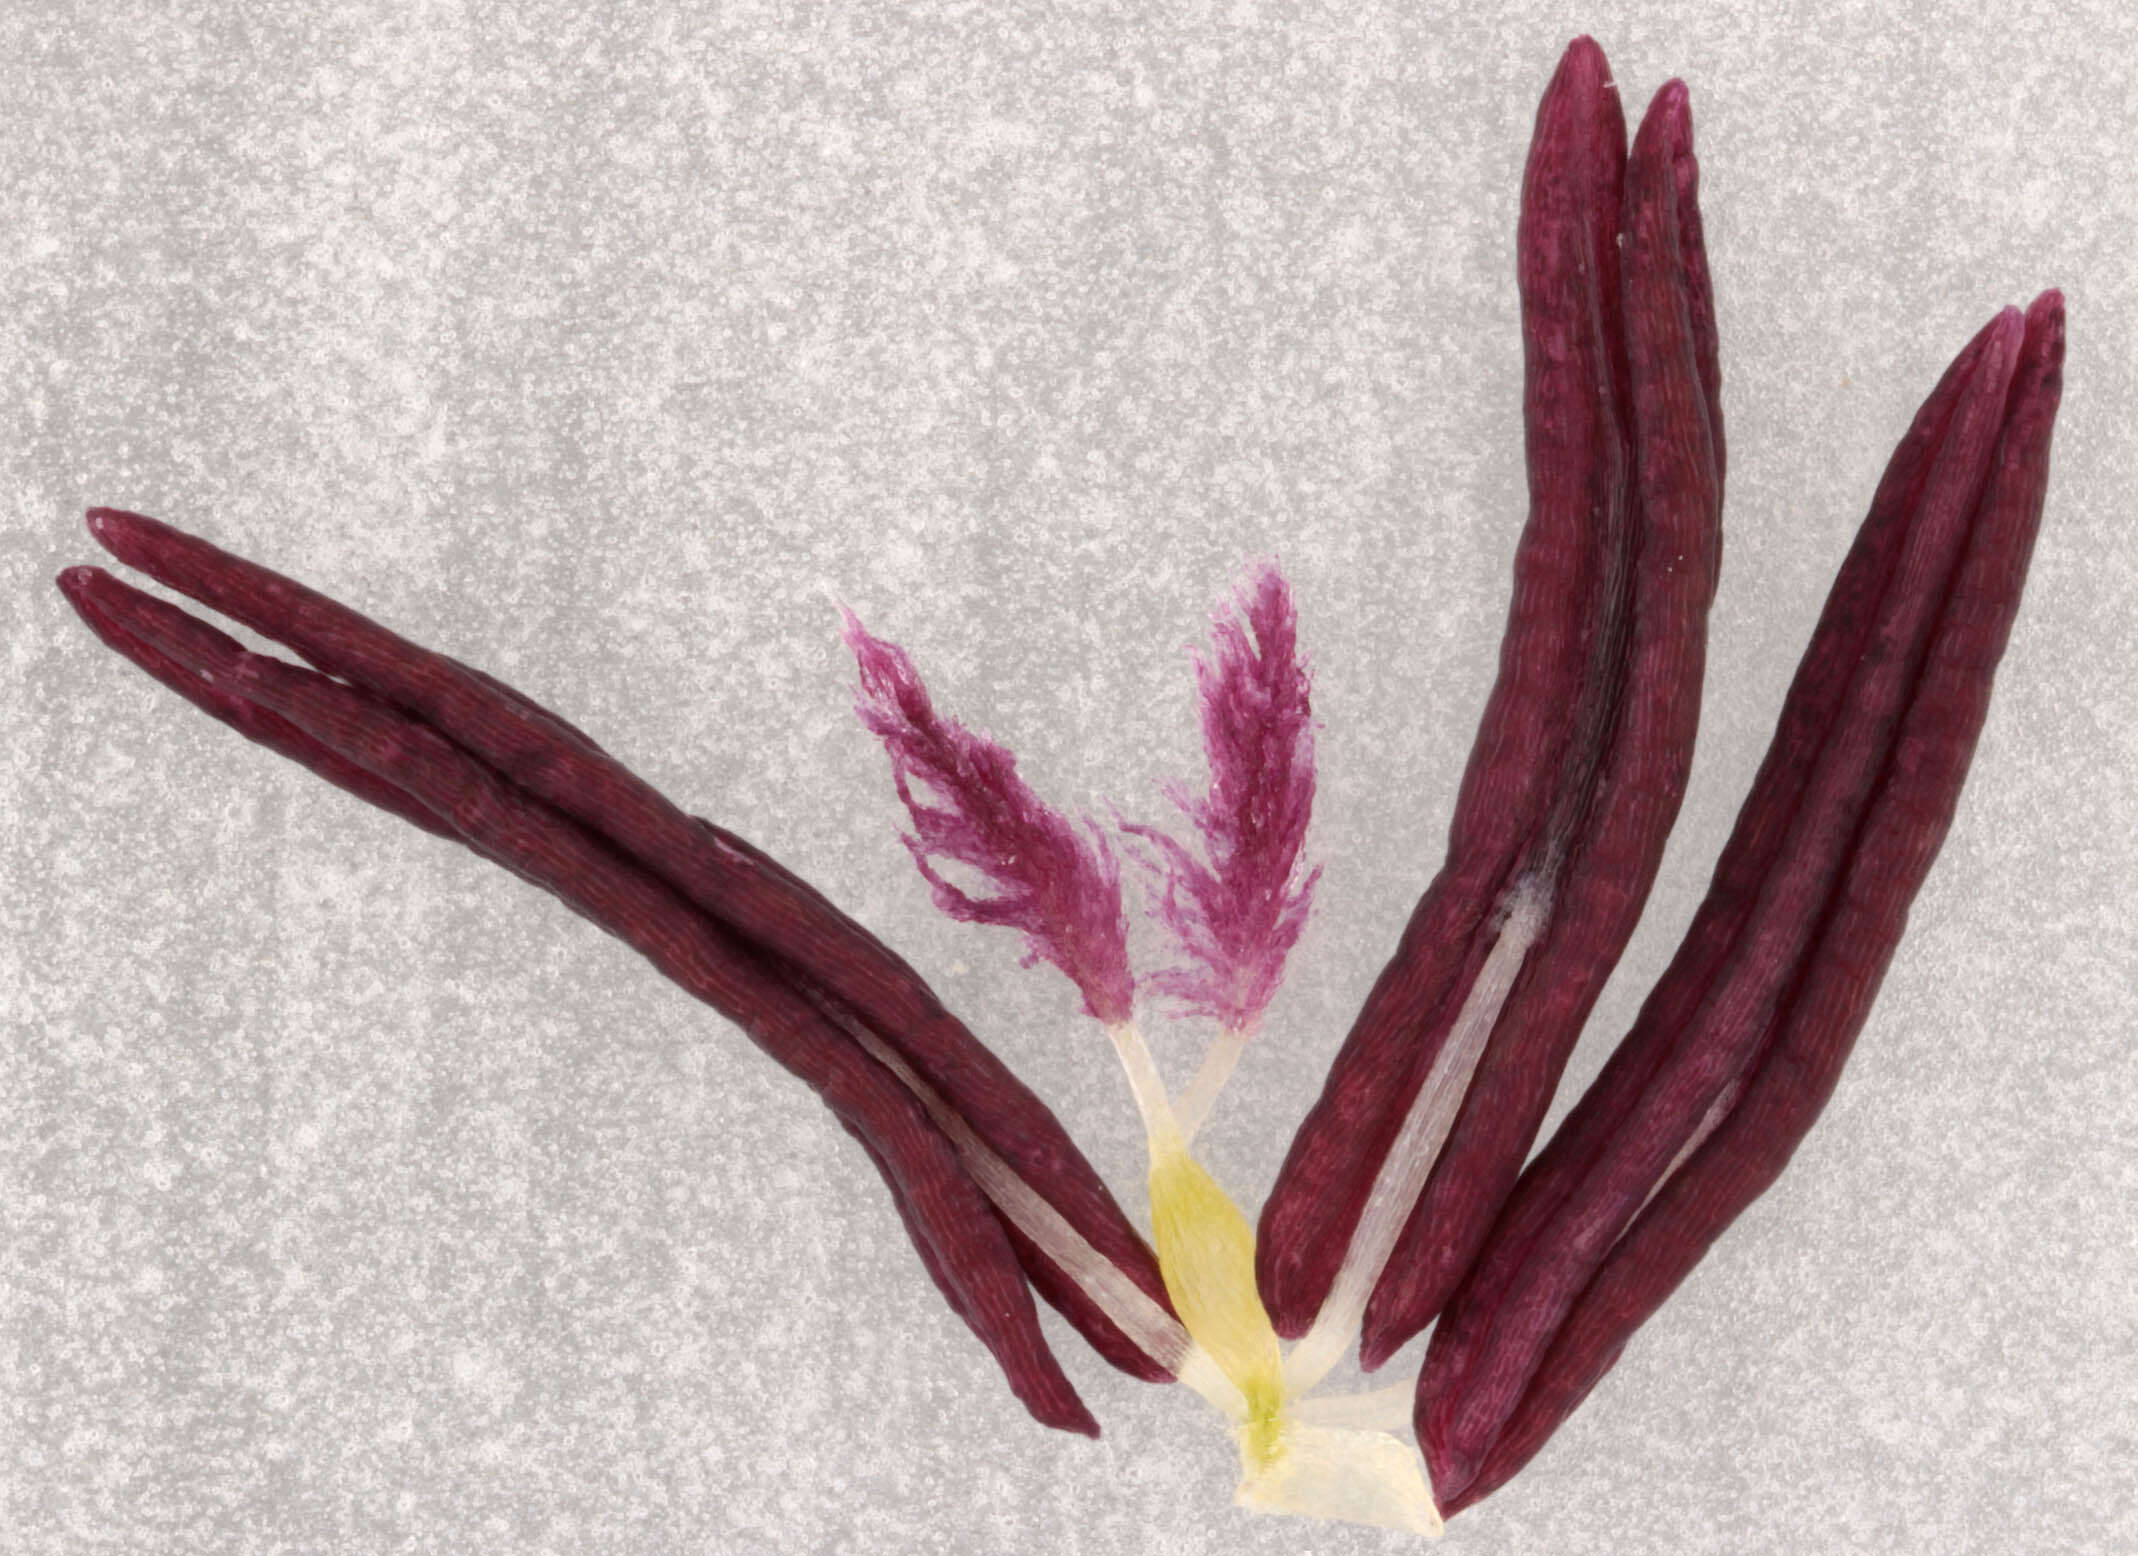 Image de Molinia caerulea subsp. caerulea